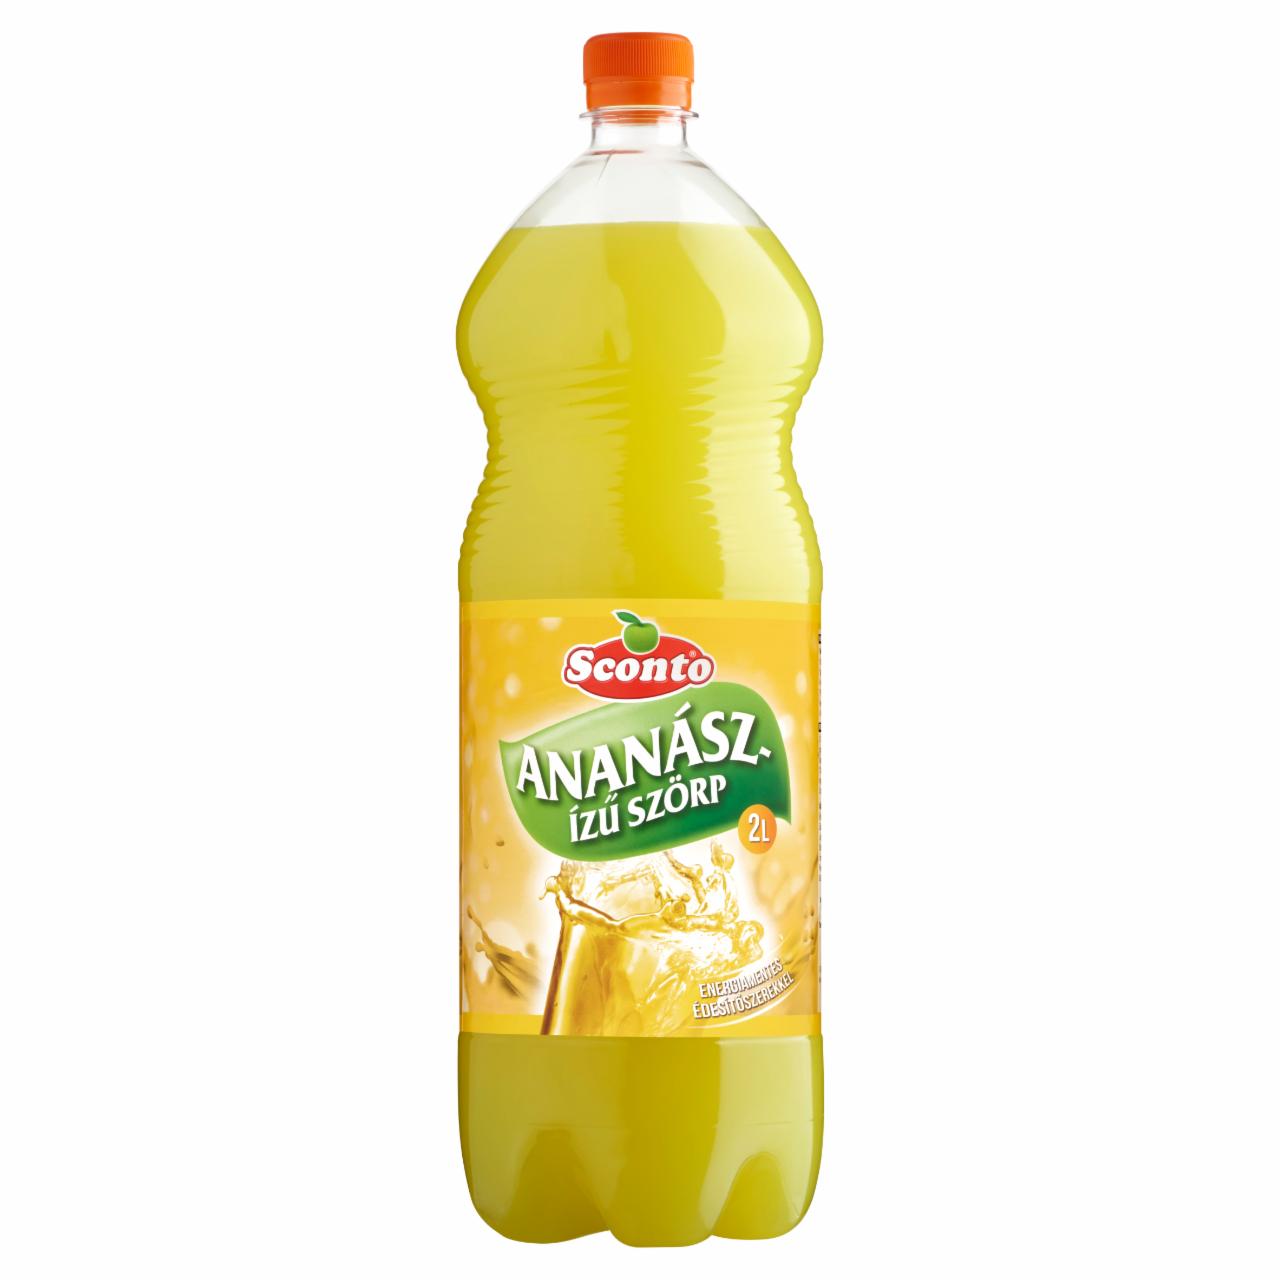 Képek - Sconto energiamentes ananász ízű szörp édesítőszerekkel 2 l